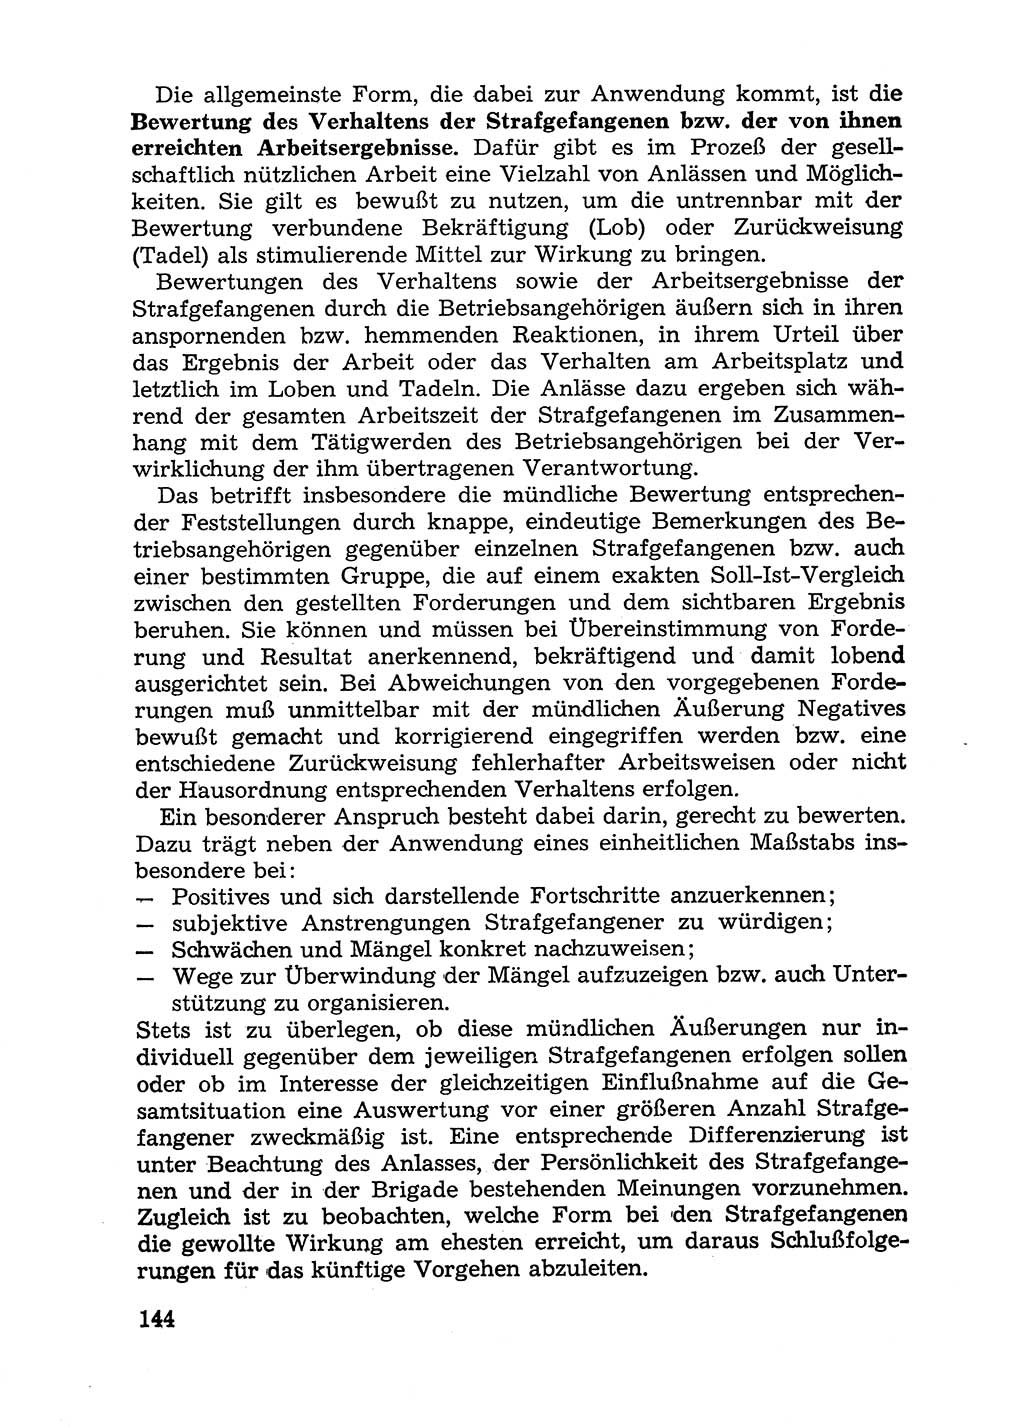 Handbuch für Betriebsangehörige, Abteilung Strafvollzug (SV) [Ministerium des Innern (MdI) Deutsche Demokratische Republik (DDR)] 1981, Seite 144 (Hb. BA Abt. SV MdI DDR 1981, S. 144)